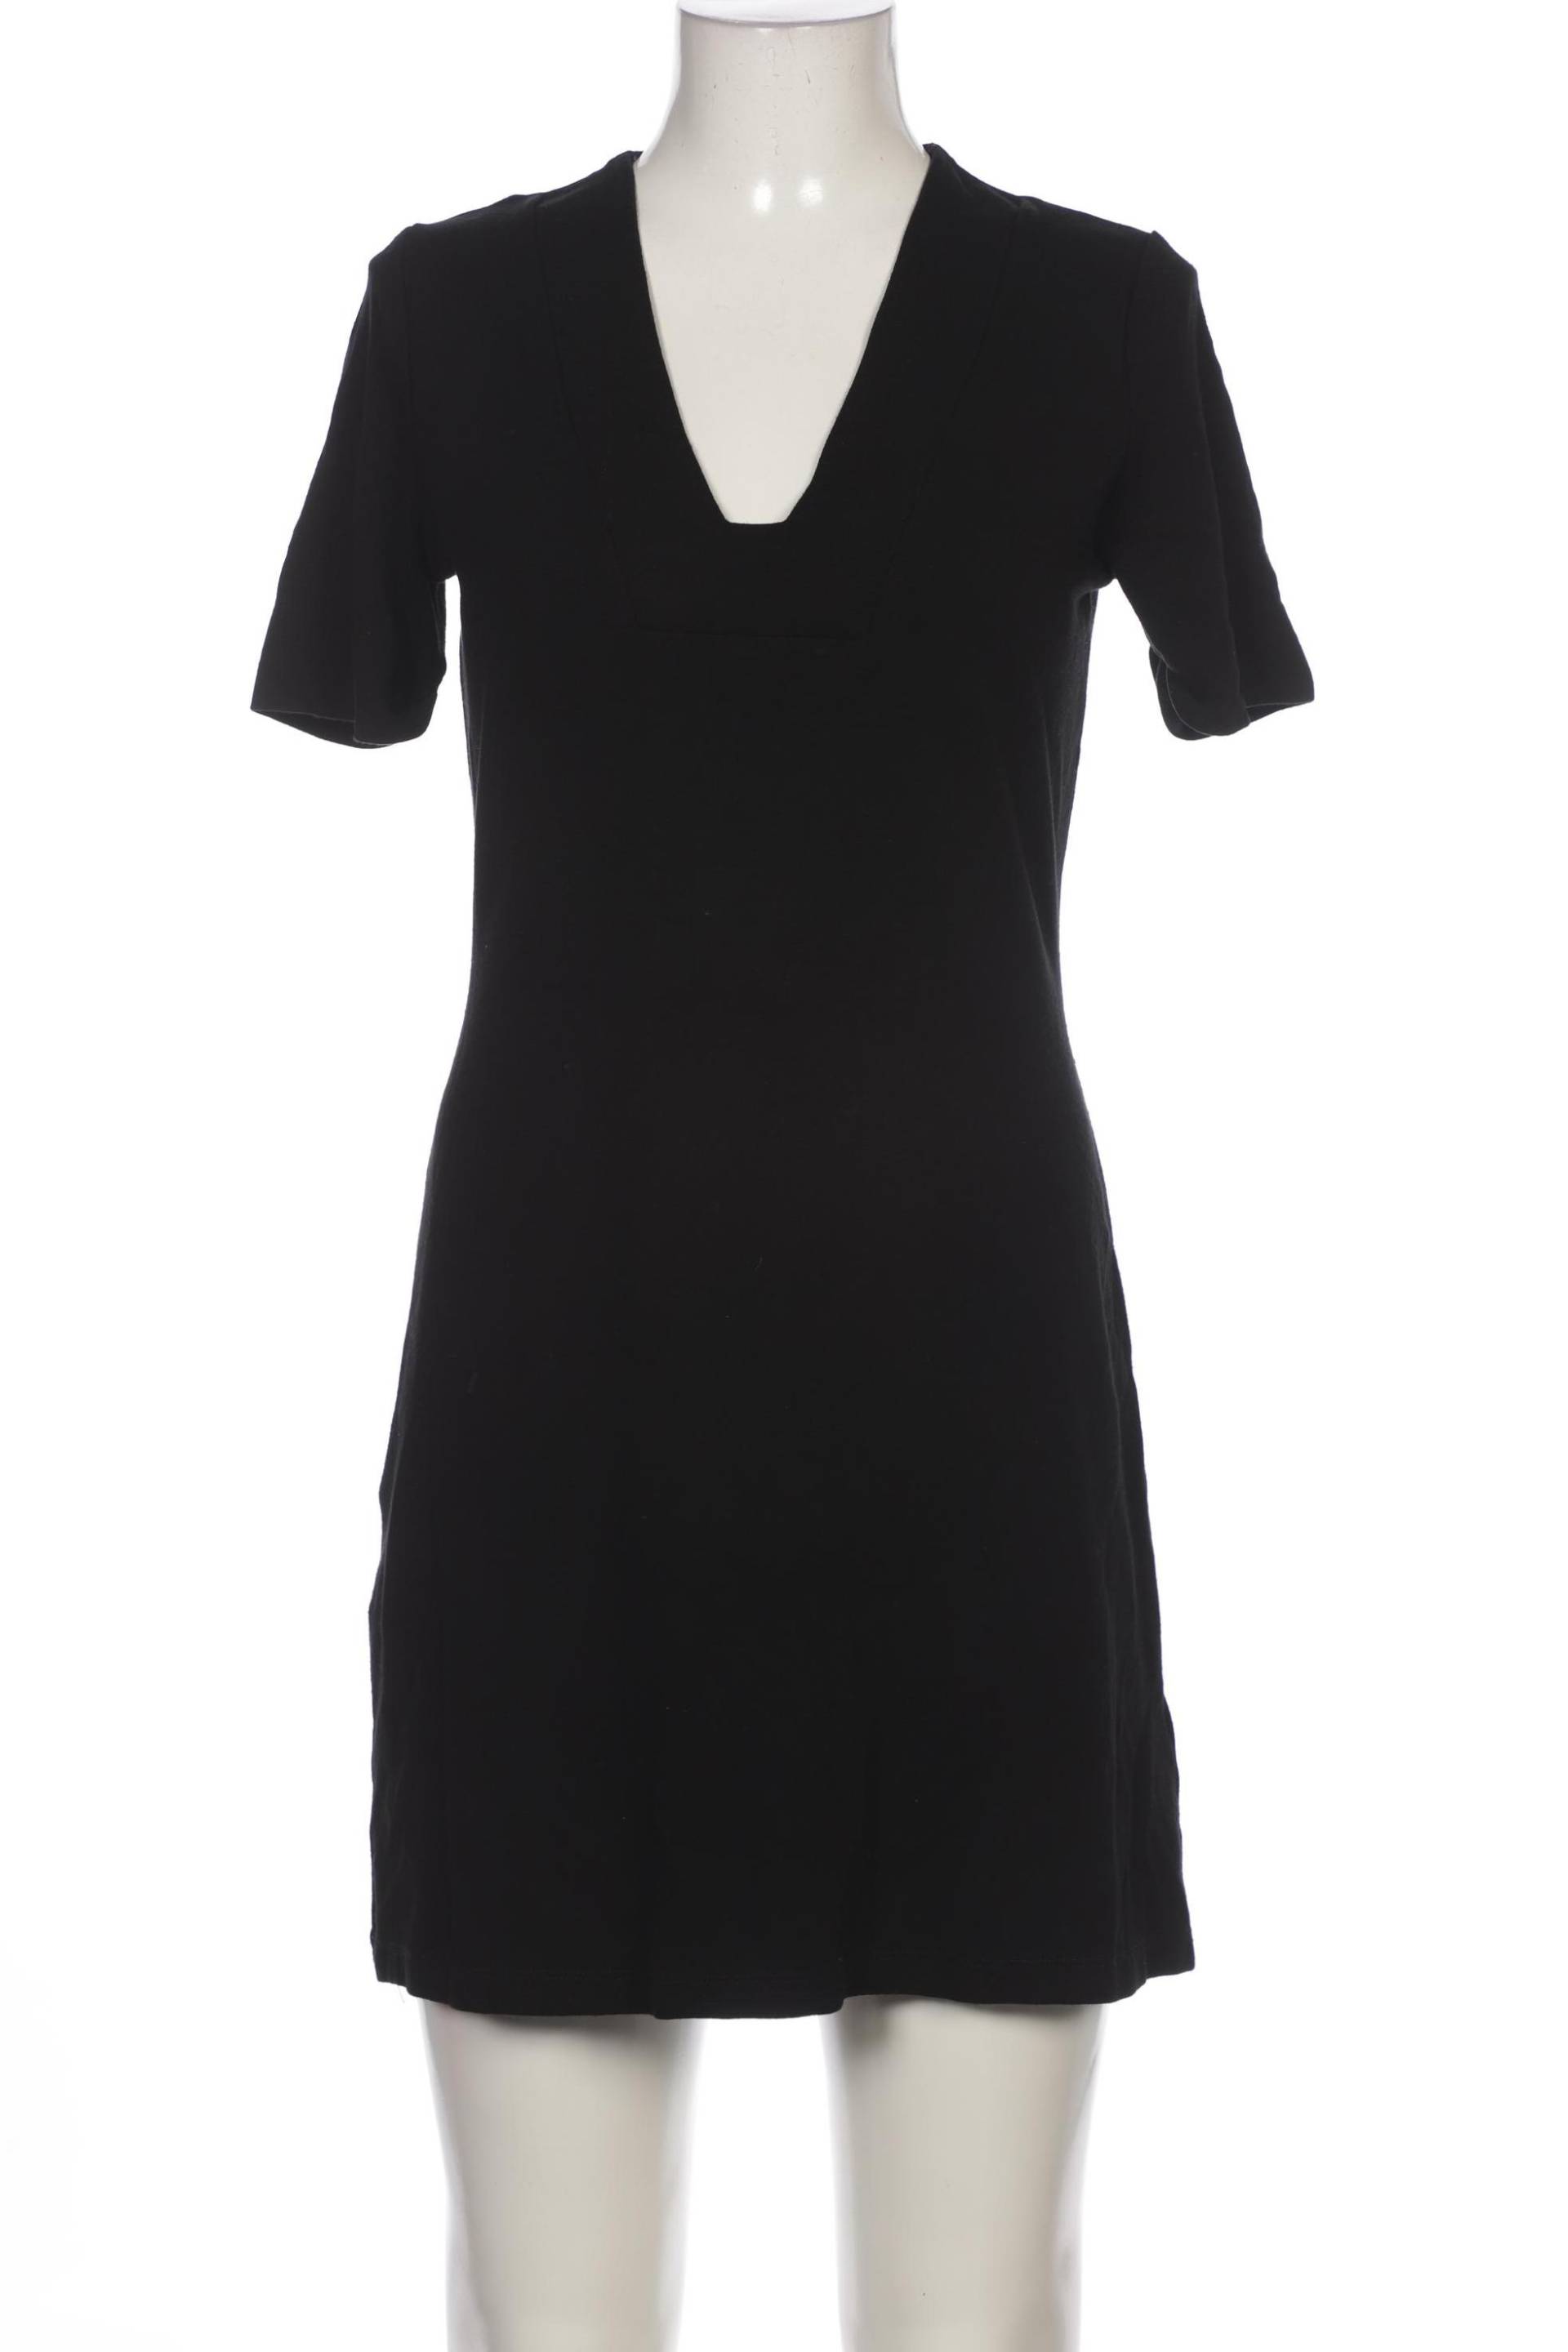 s.Oliver Selection Damen Kleid, schwarz, Gr. 40 von s.Oliver Selection